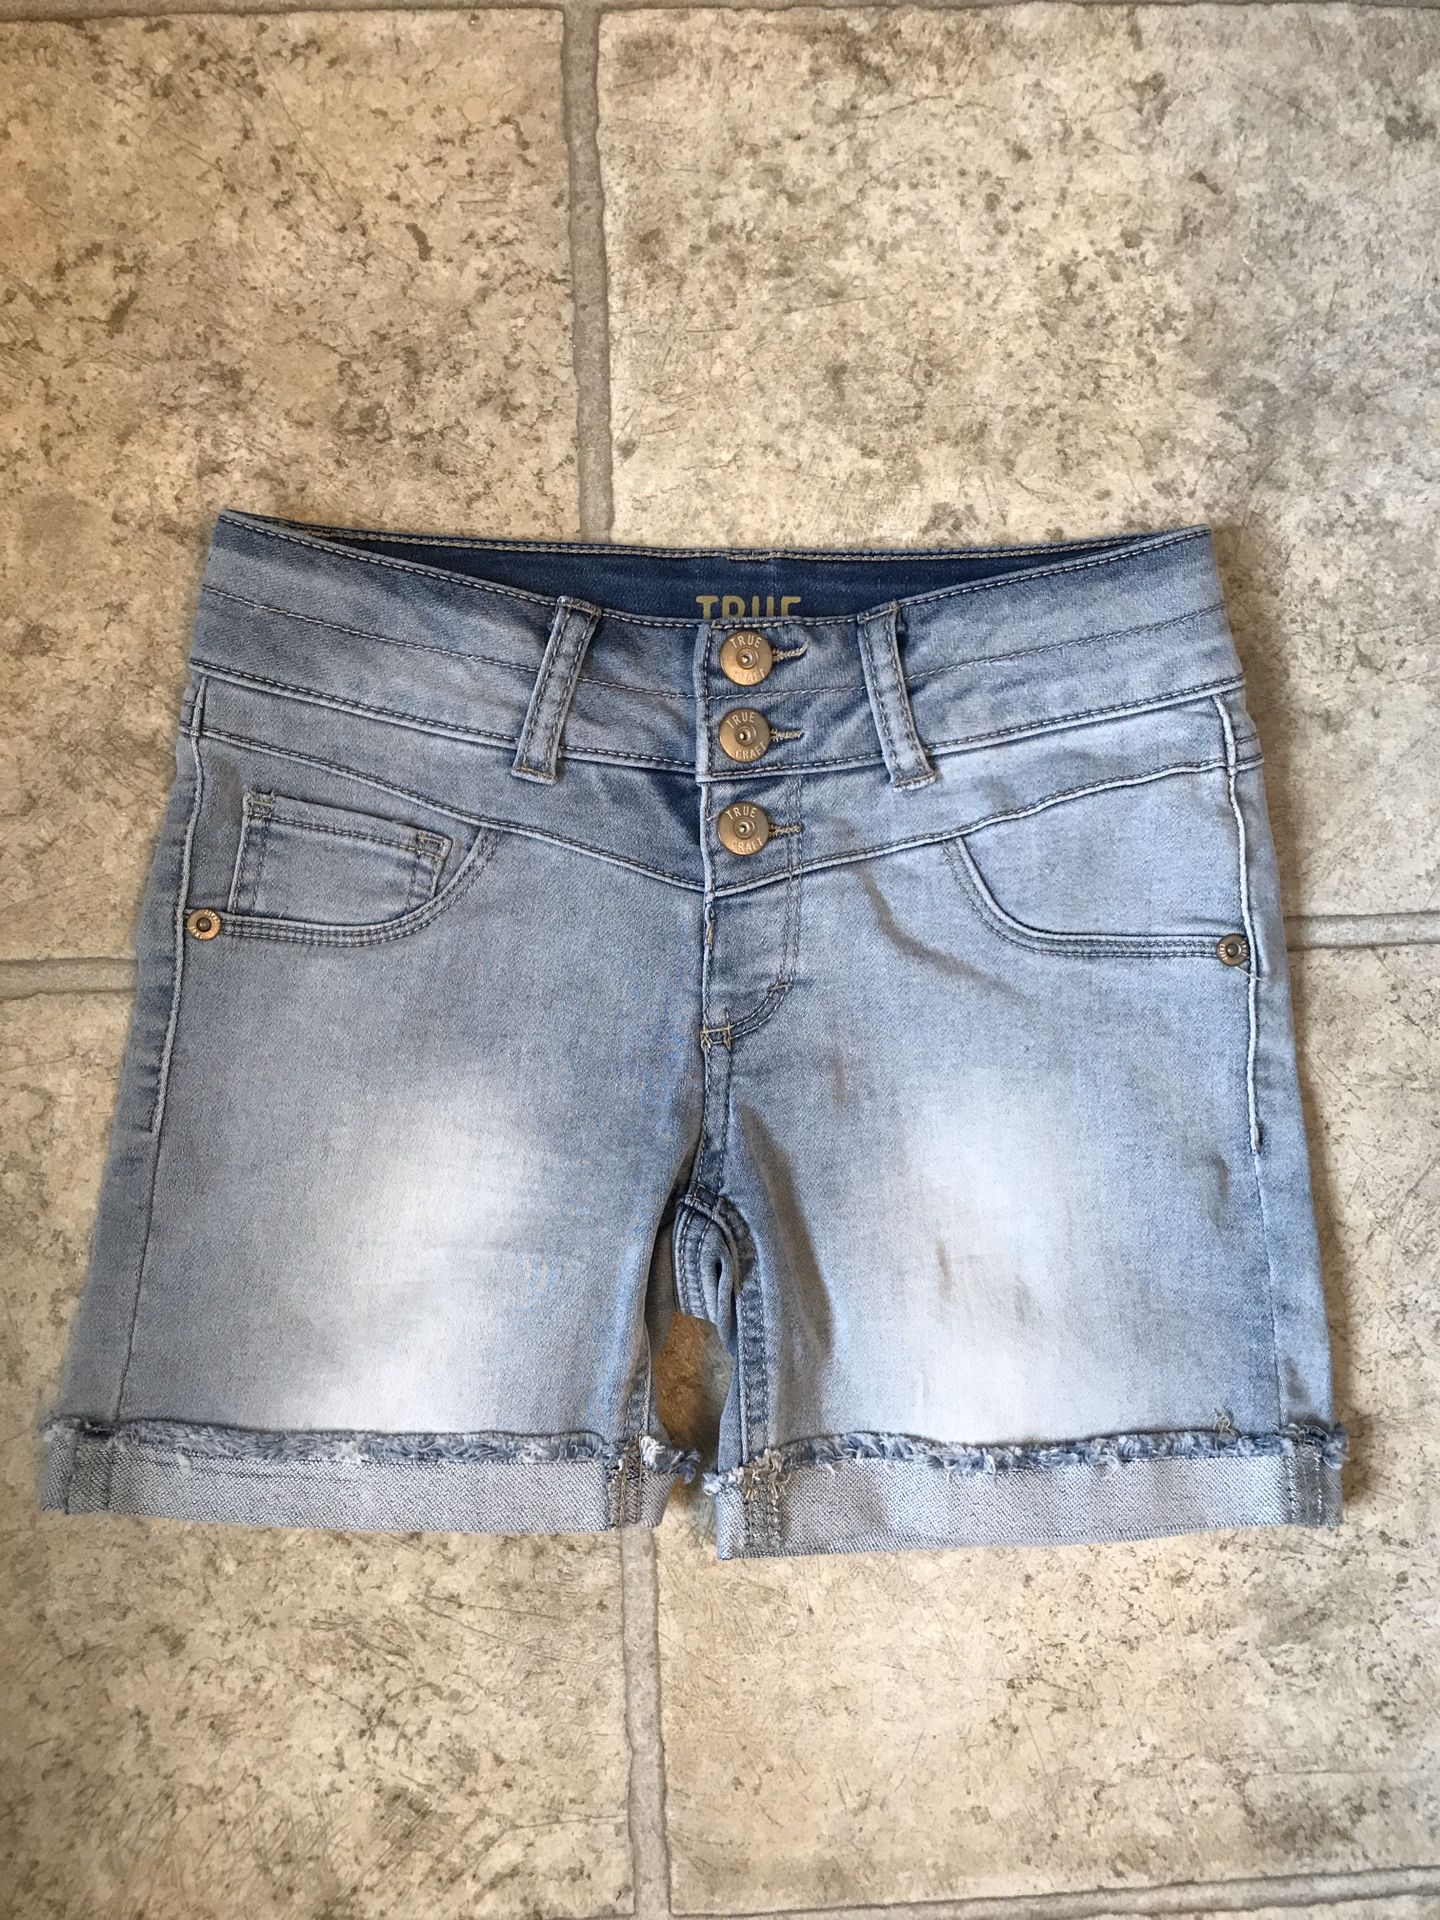 Girls Size 10 Jean Shorts